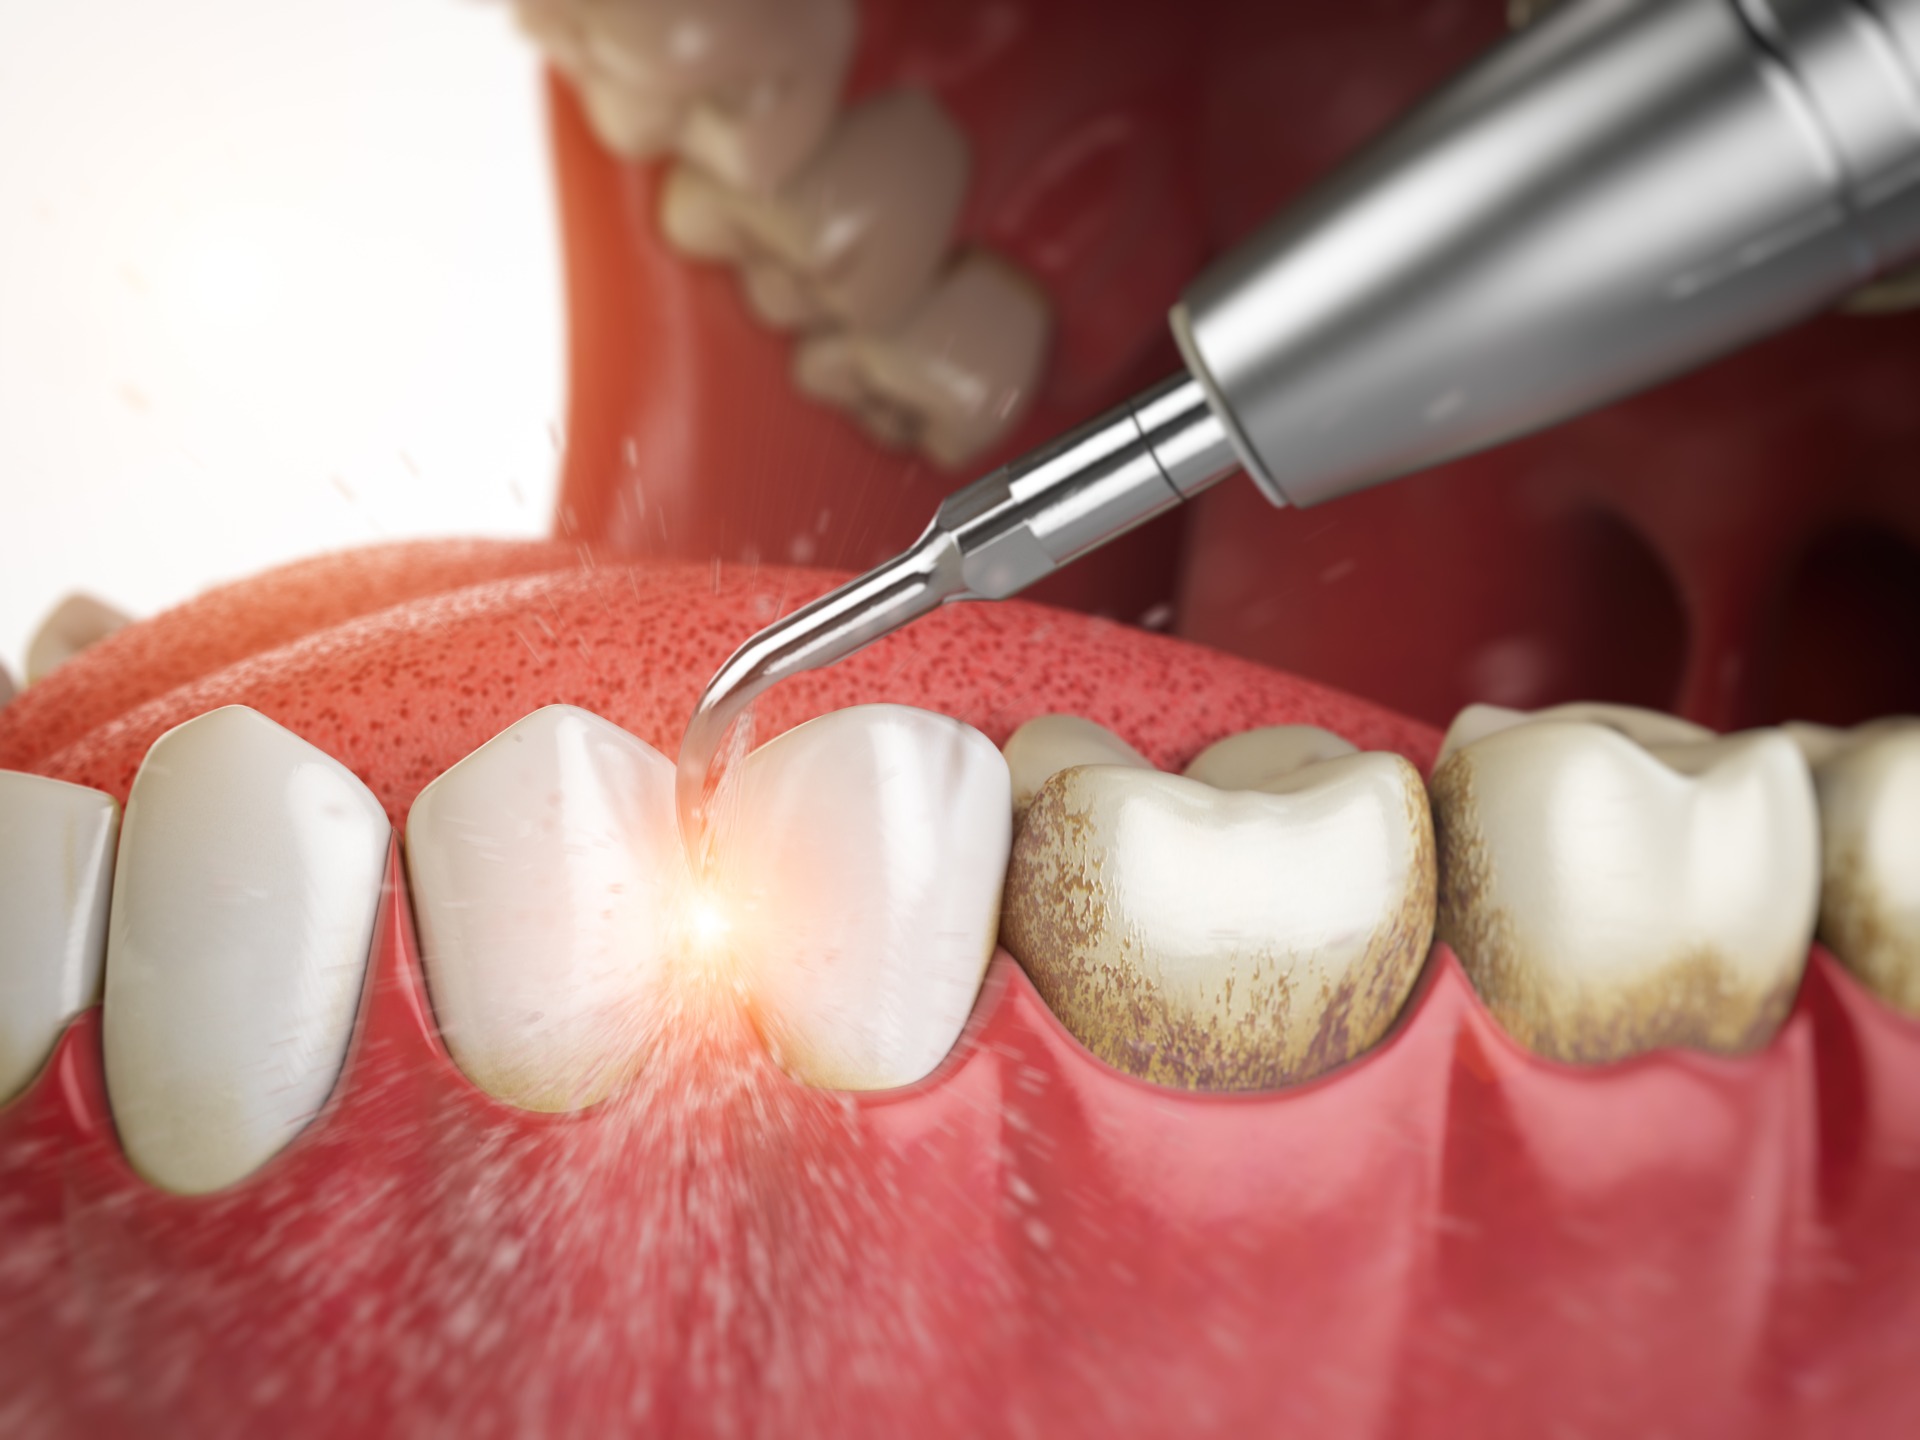 Чистка зуб г. Профгигиена (ультразвук + Air-Flow). Пришеечный зубной камень. Поддесневой зубной налет. Поддесневые отложения зубной камень.